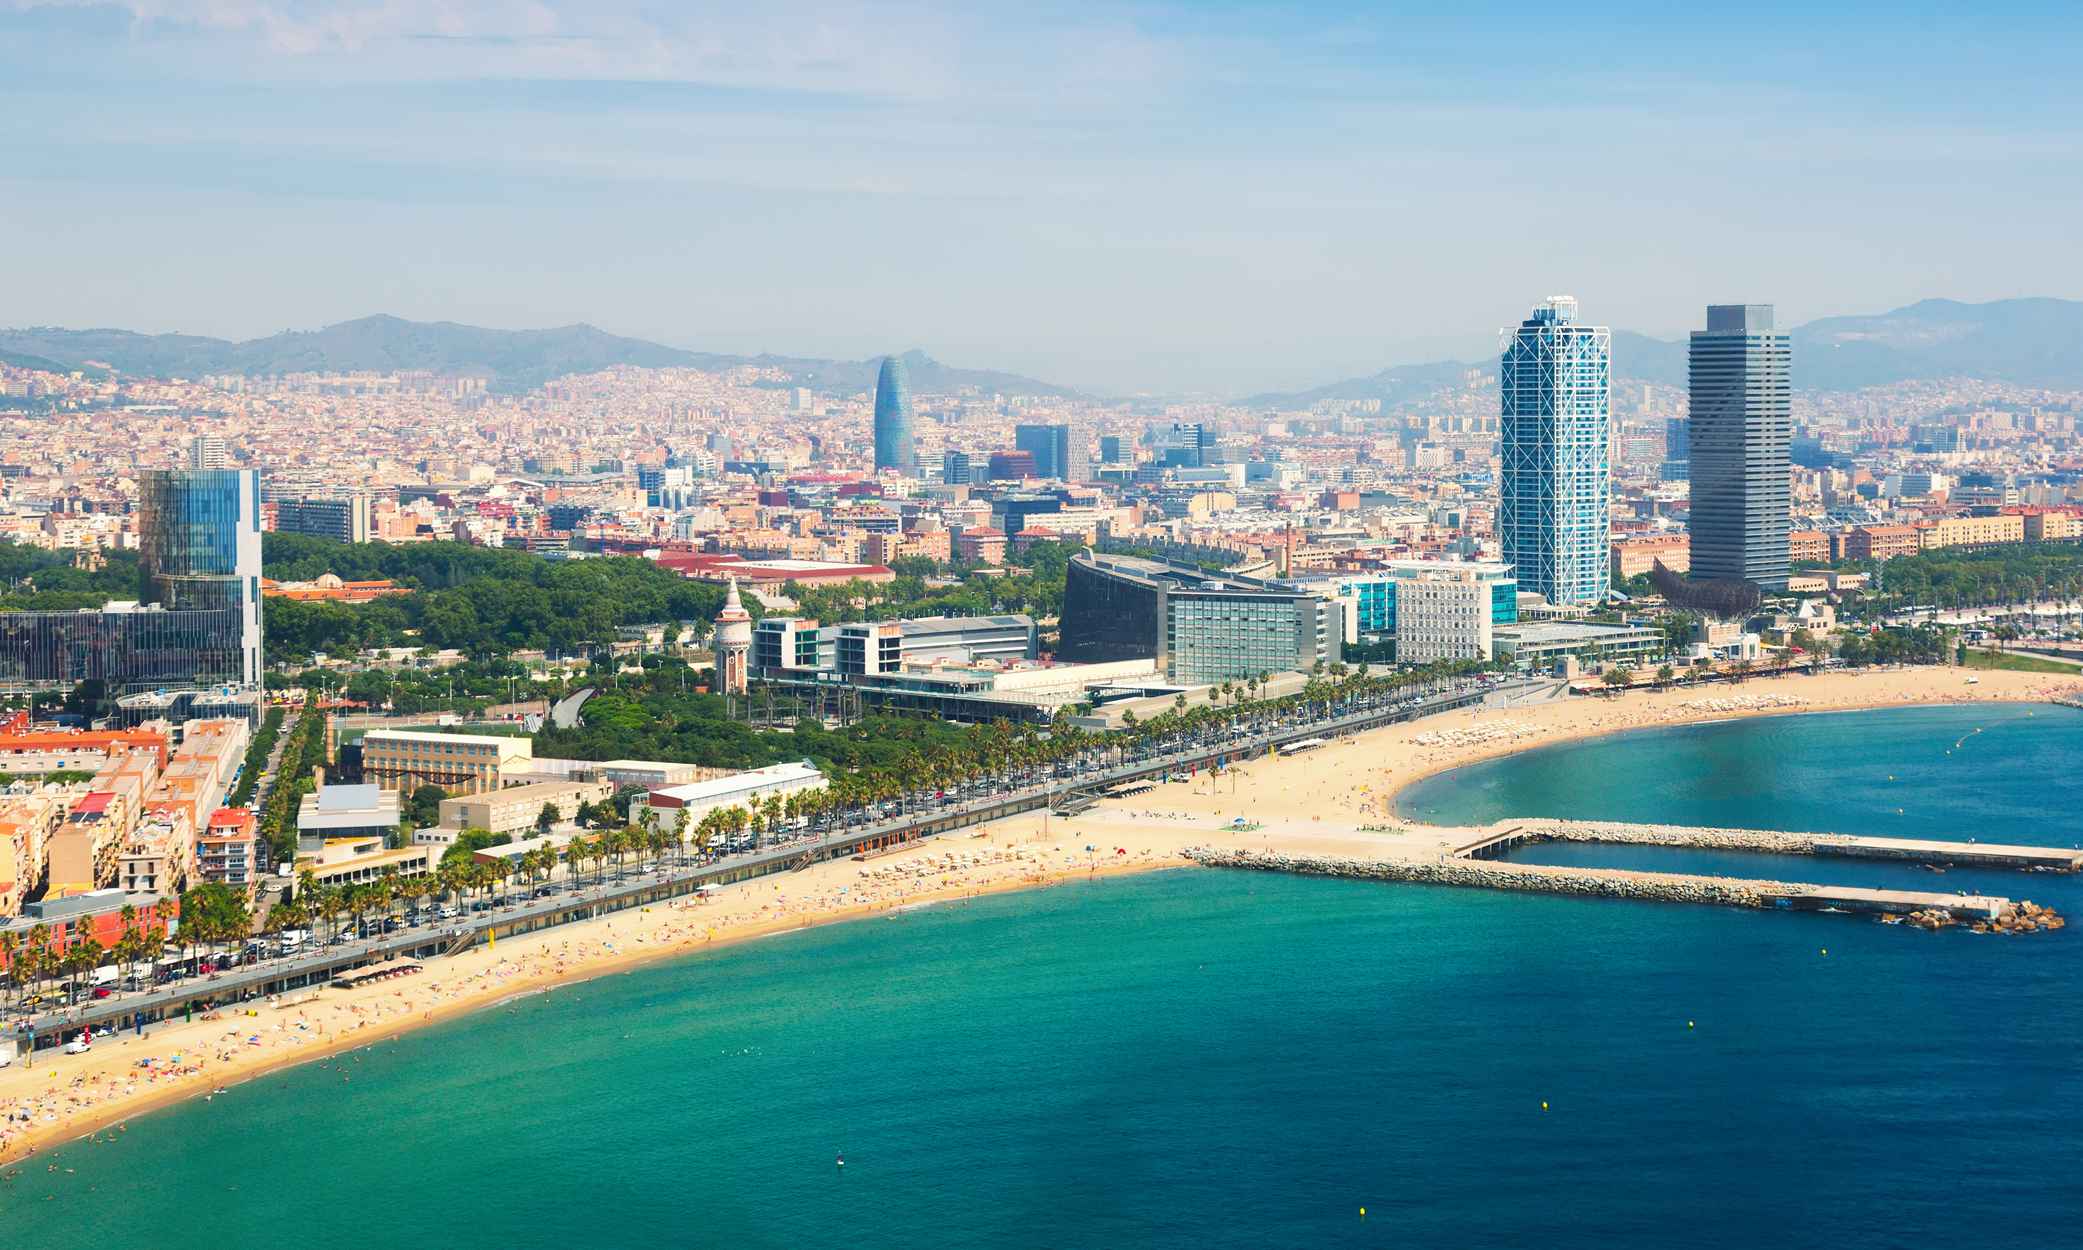 İspanya Golden Visa sahipleri için en iyi 11 üs arasında Barselona yer almaktadır.